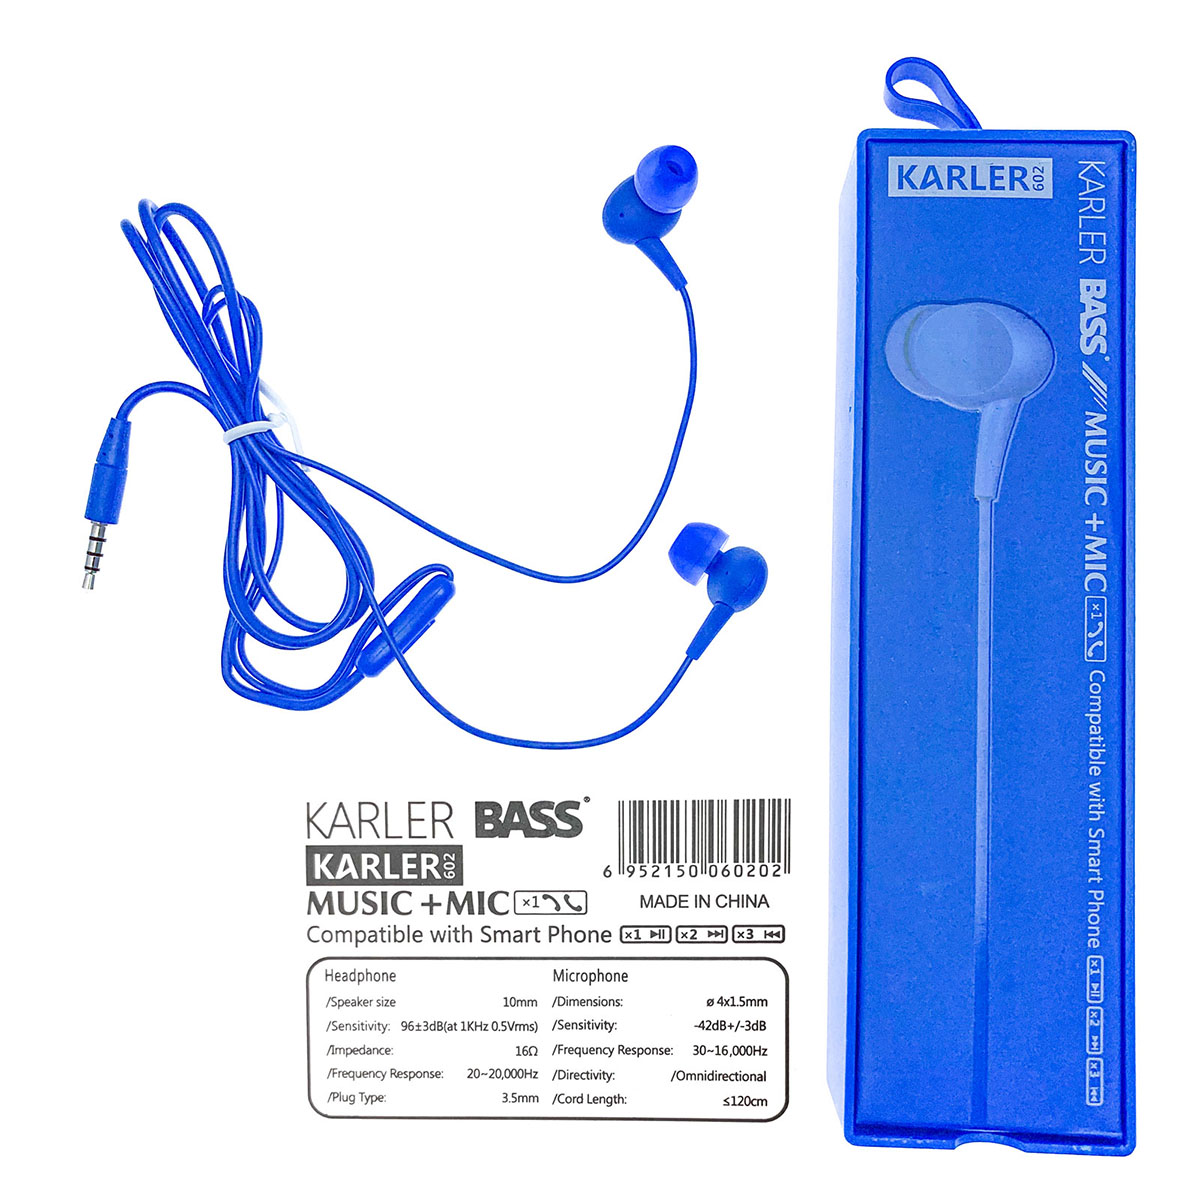 Гарнитура (наушники с микрофоном) проводная, KARLER 602 BASS, в силиконовой оболочке, цвет синий.